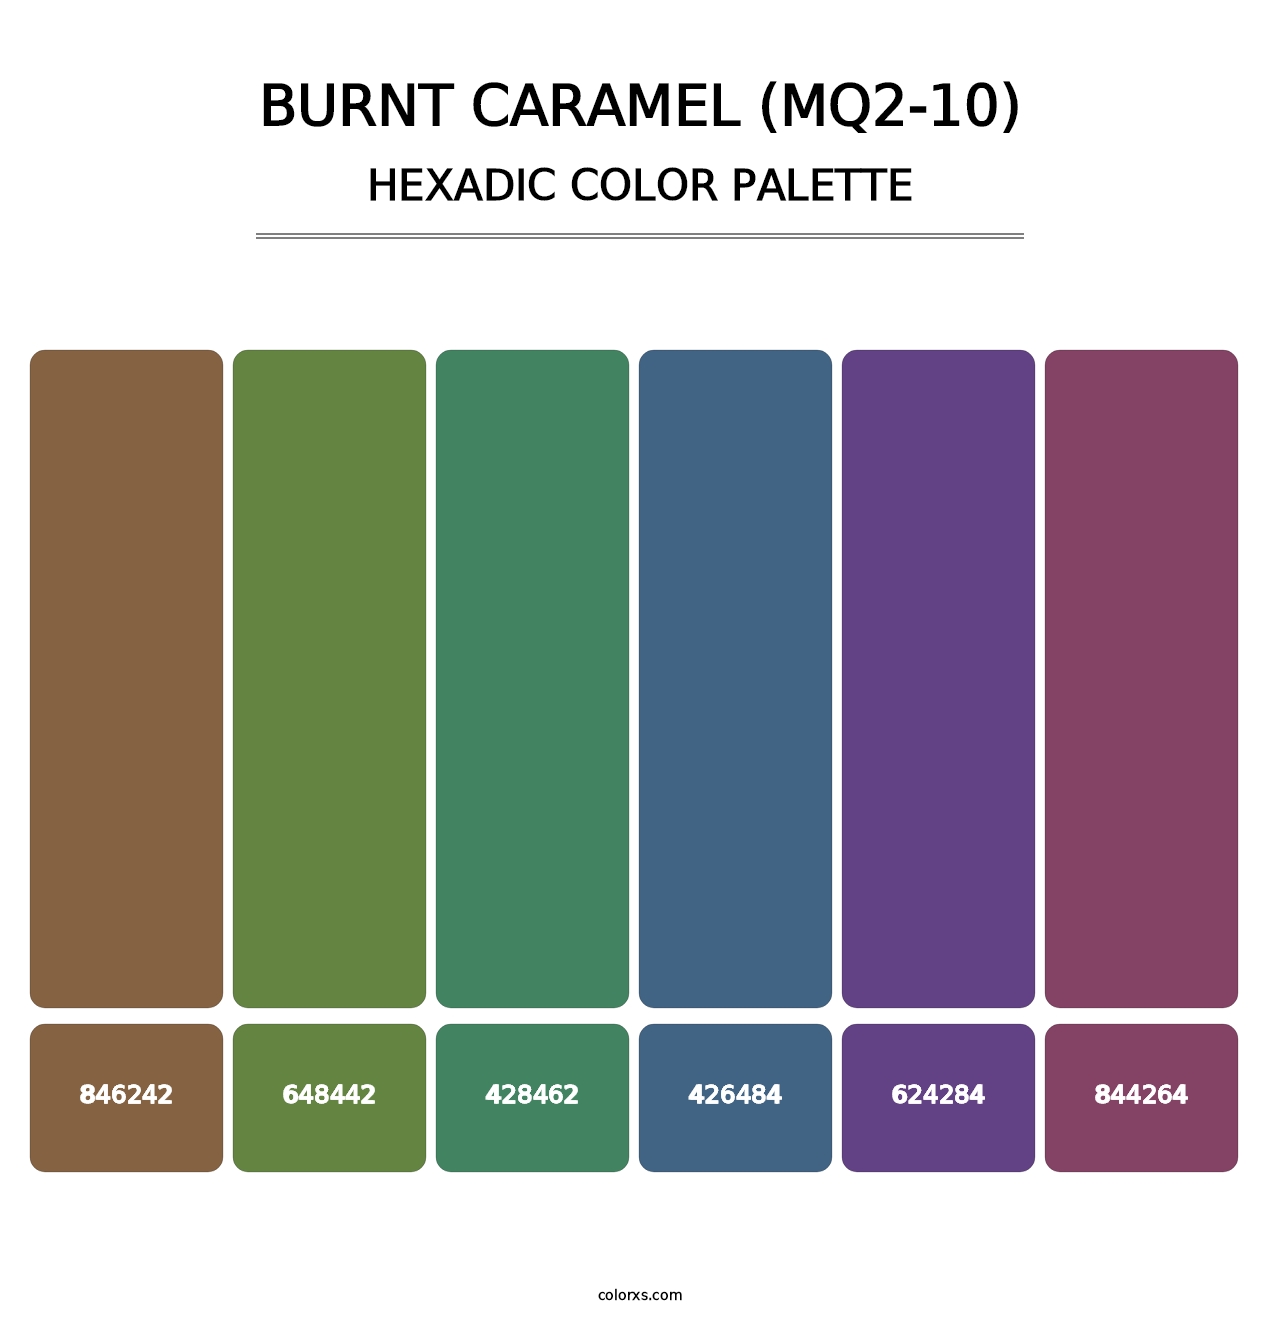 Burnt Caramel (MQ2-10) - Hexadic Color Palette